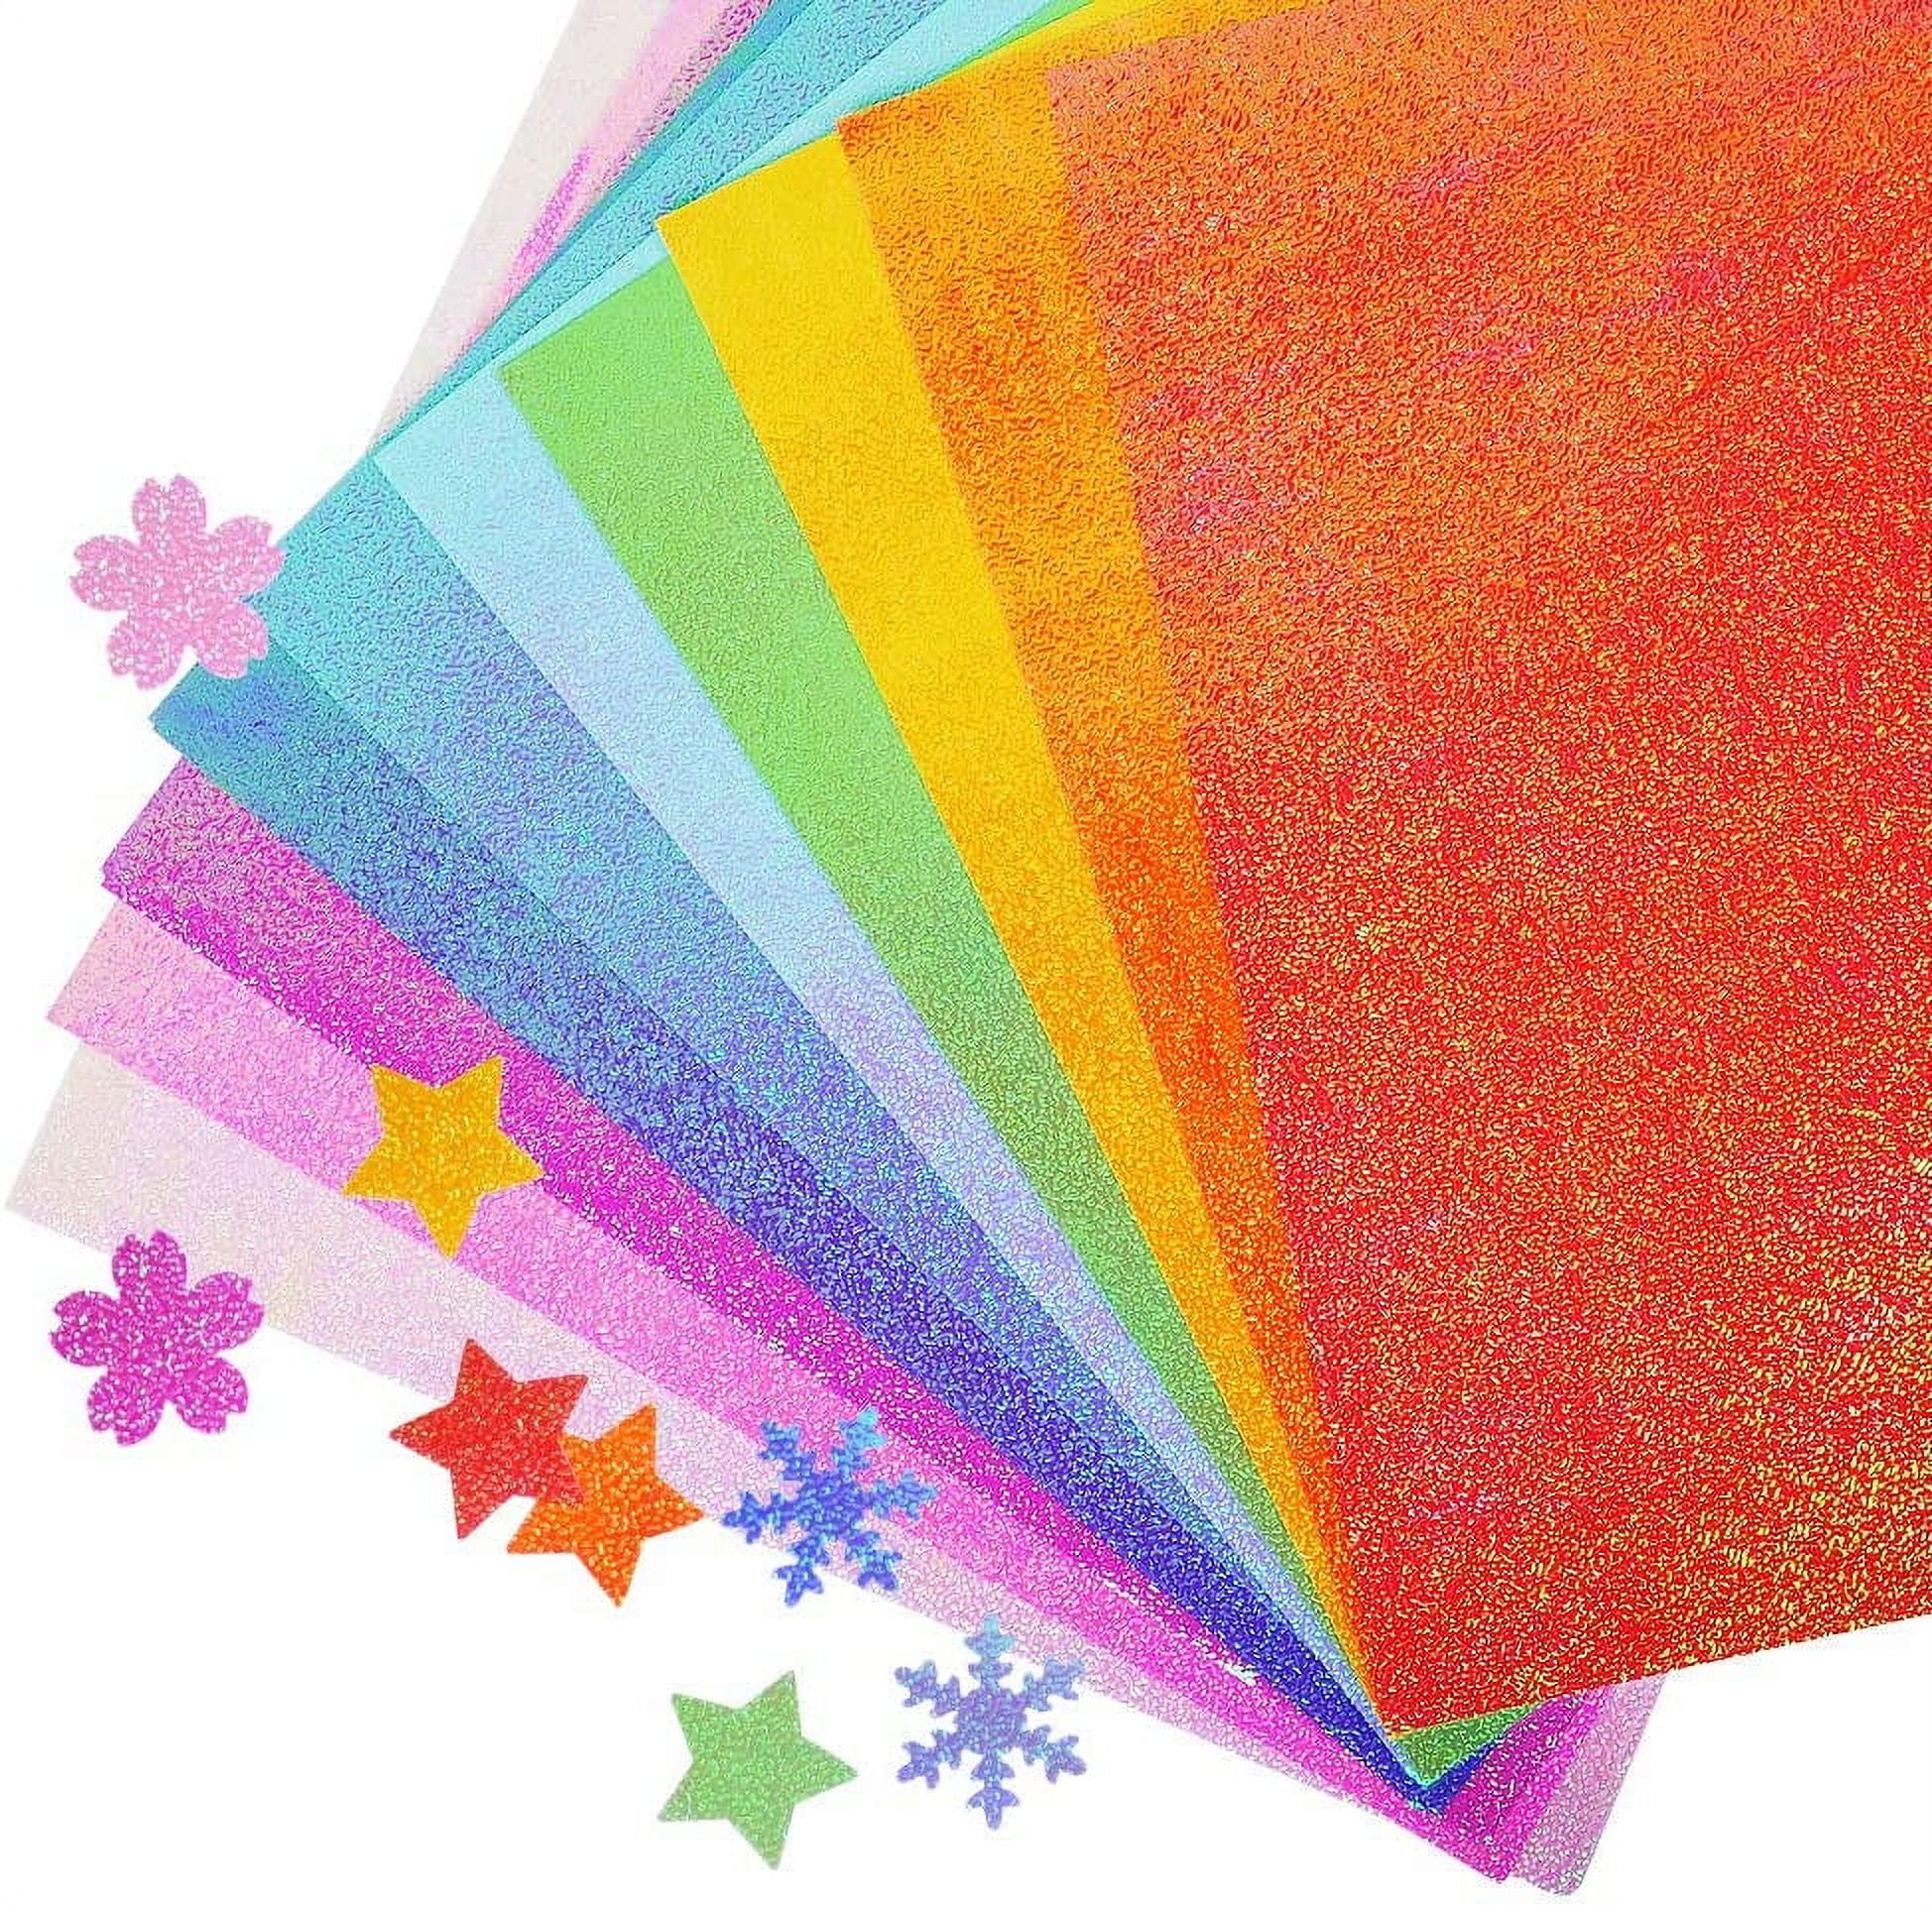 Hemi Glitter Paper Unruled A4 120 gsm Craft paper